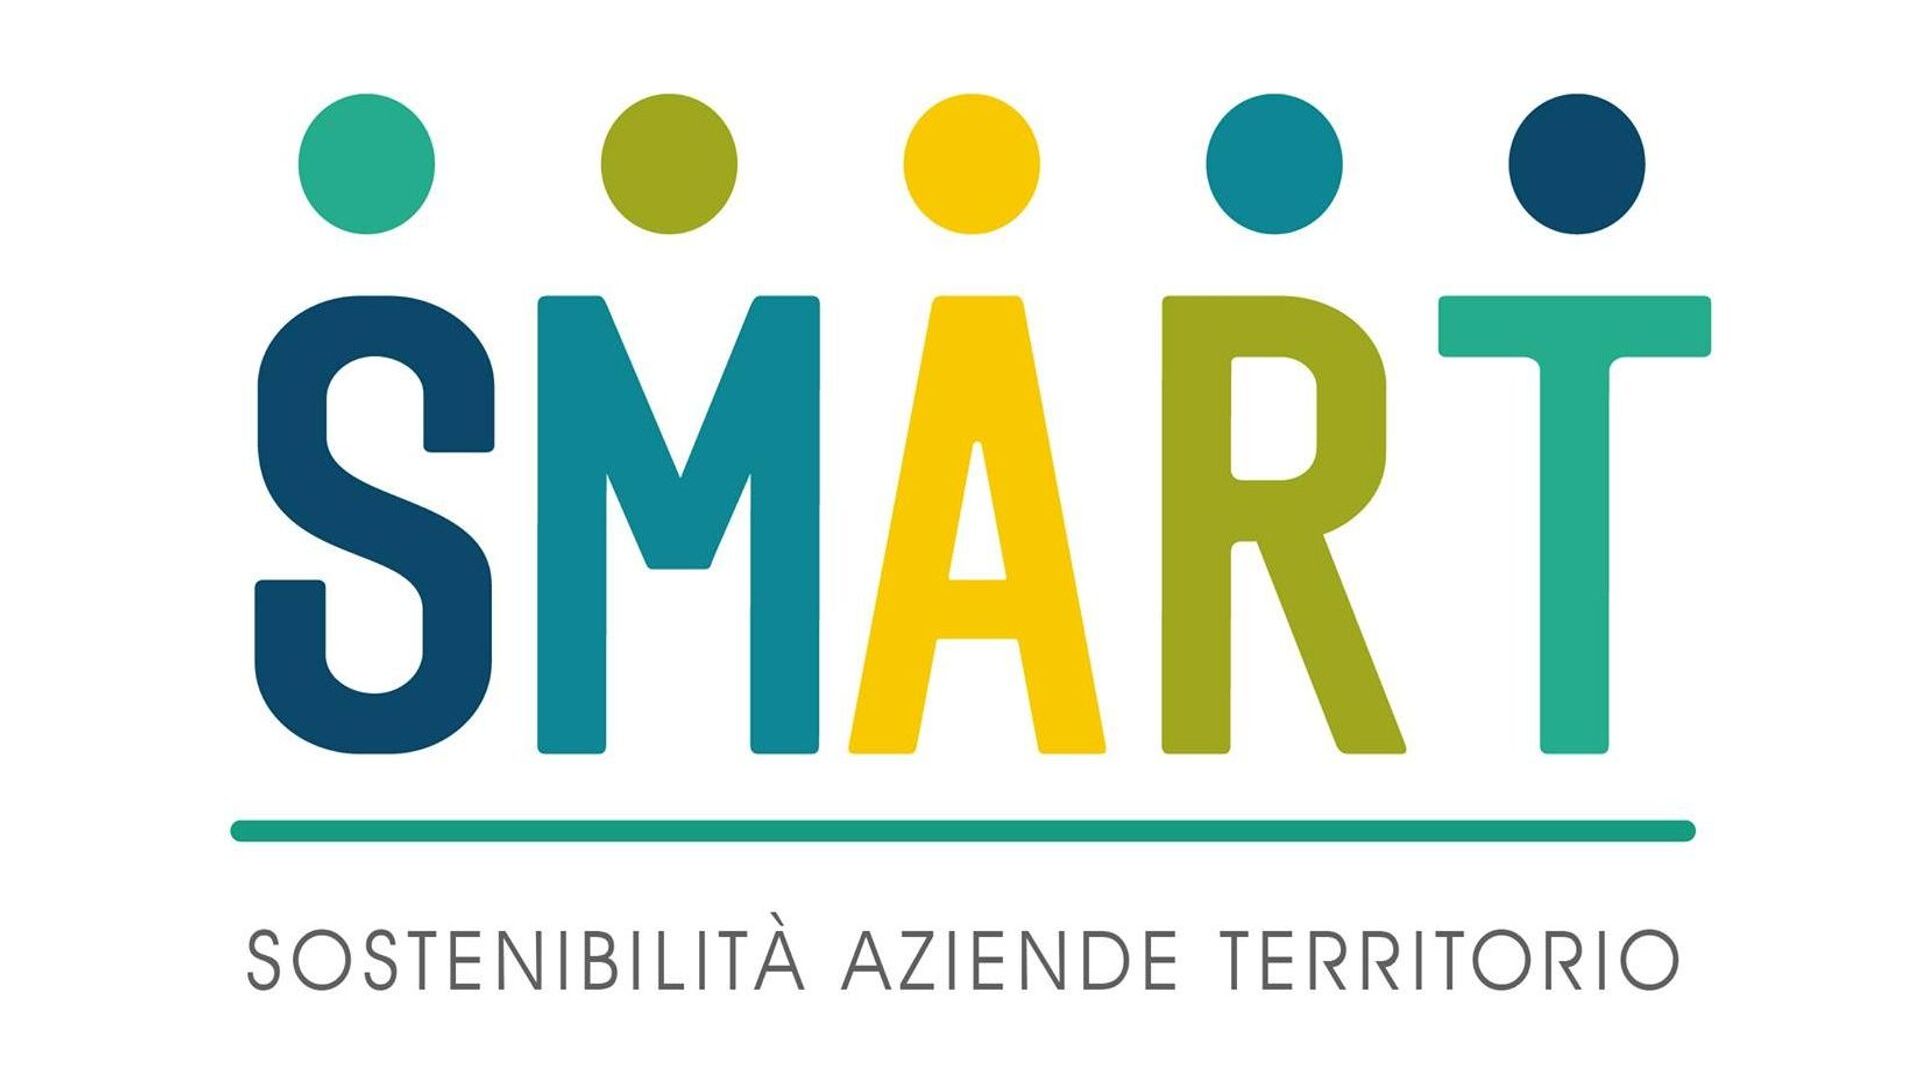 SMART პროექტის ლოგო (მდგრადი სტრატეგიები და პასუხისმგებელი ბიზნეს მოდელები ტრანსსასაზღვრო ტერიტორიაზე)